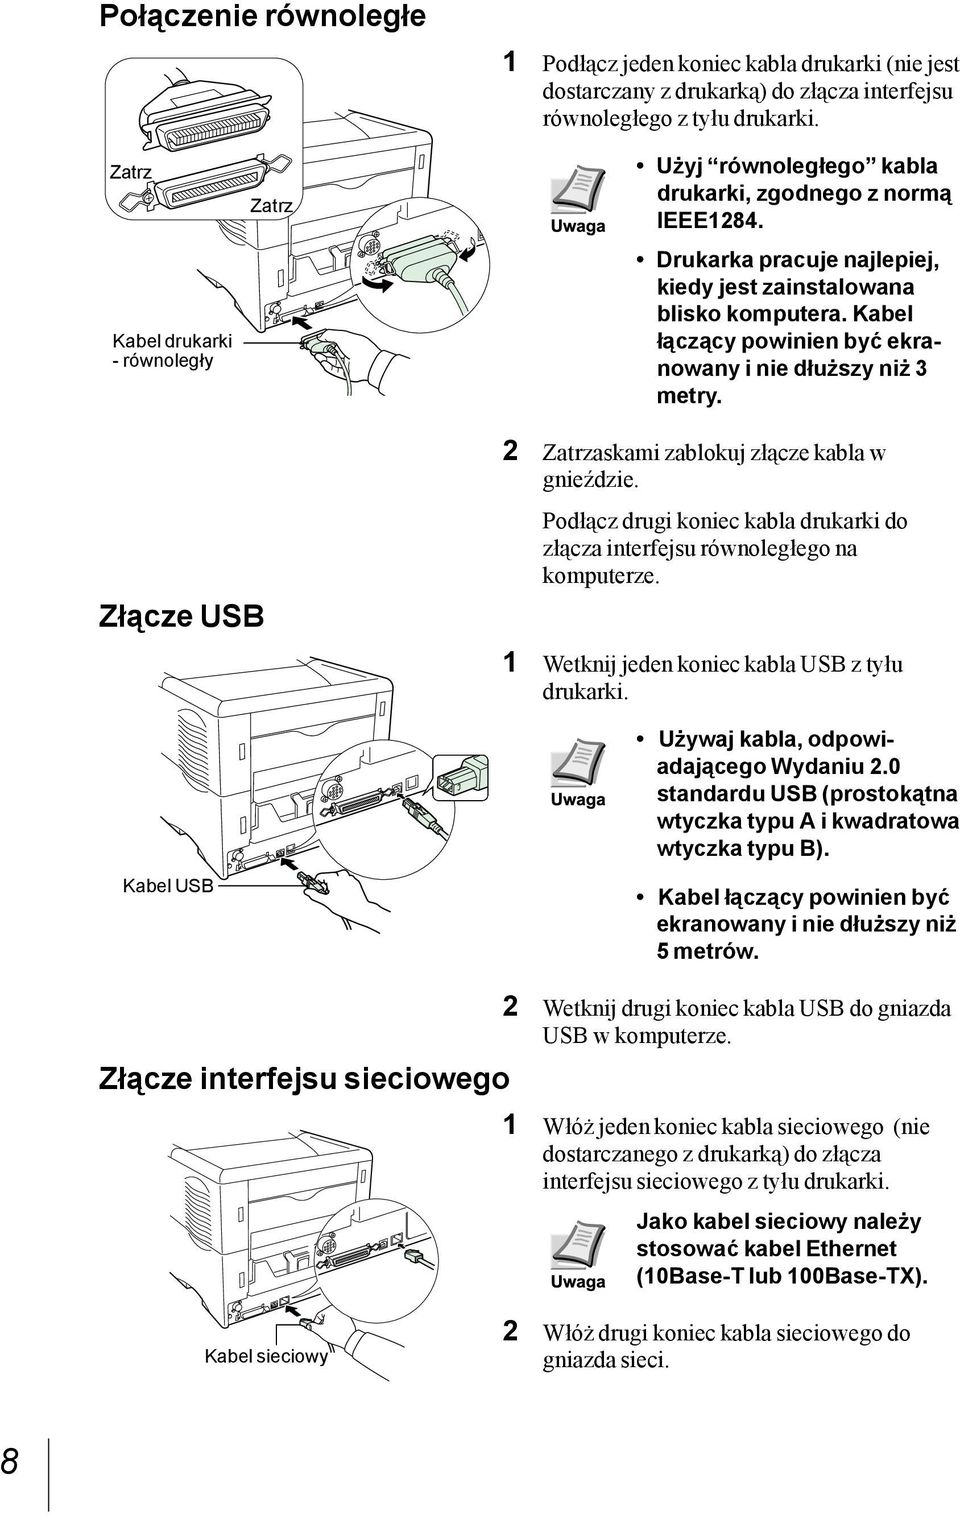 Kabel łączący powinien być ekranowany i nie dłuższy niż 3 metry. Złącze USB Kabel USB 2 Zatrzaskami zablokuj złącze kabla w gnieździe.